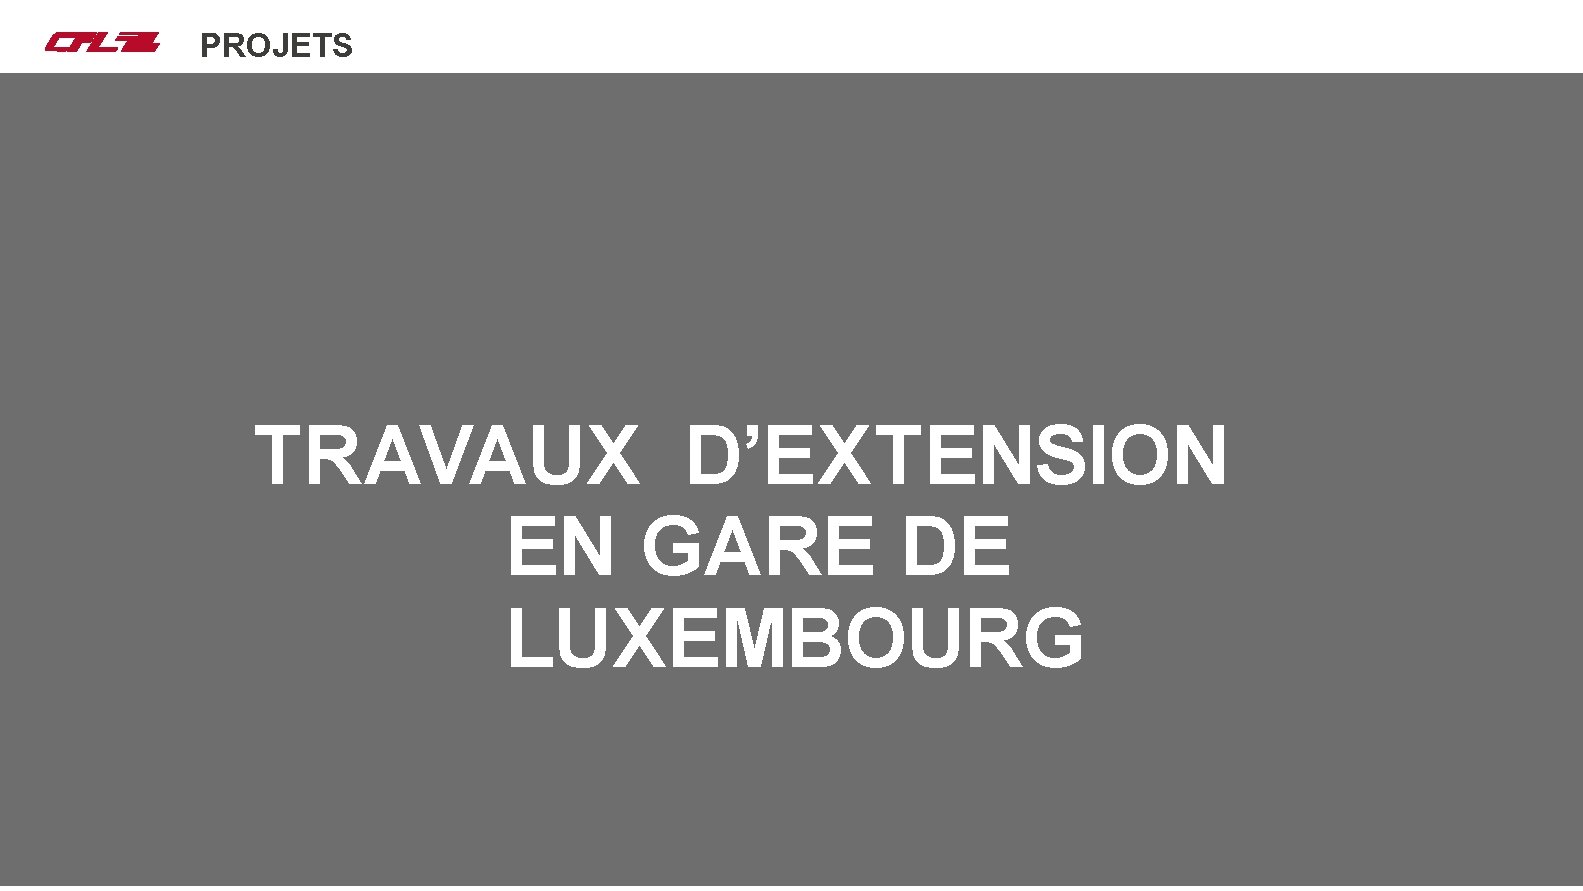 Nos projets PROJETS MISE EN SERVICE TRAVAUX D’EXTENSION EN GARE DE LUXEMBOURG 